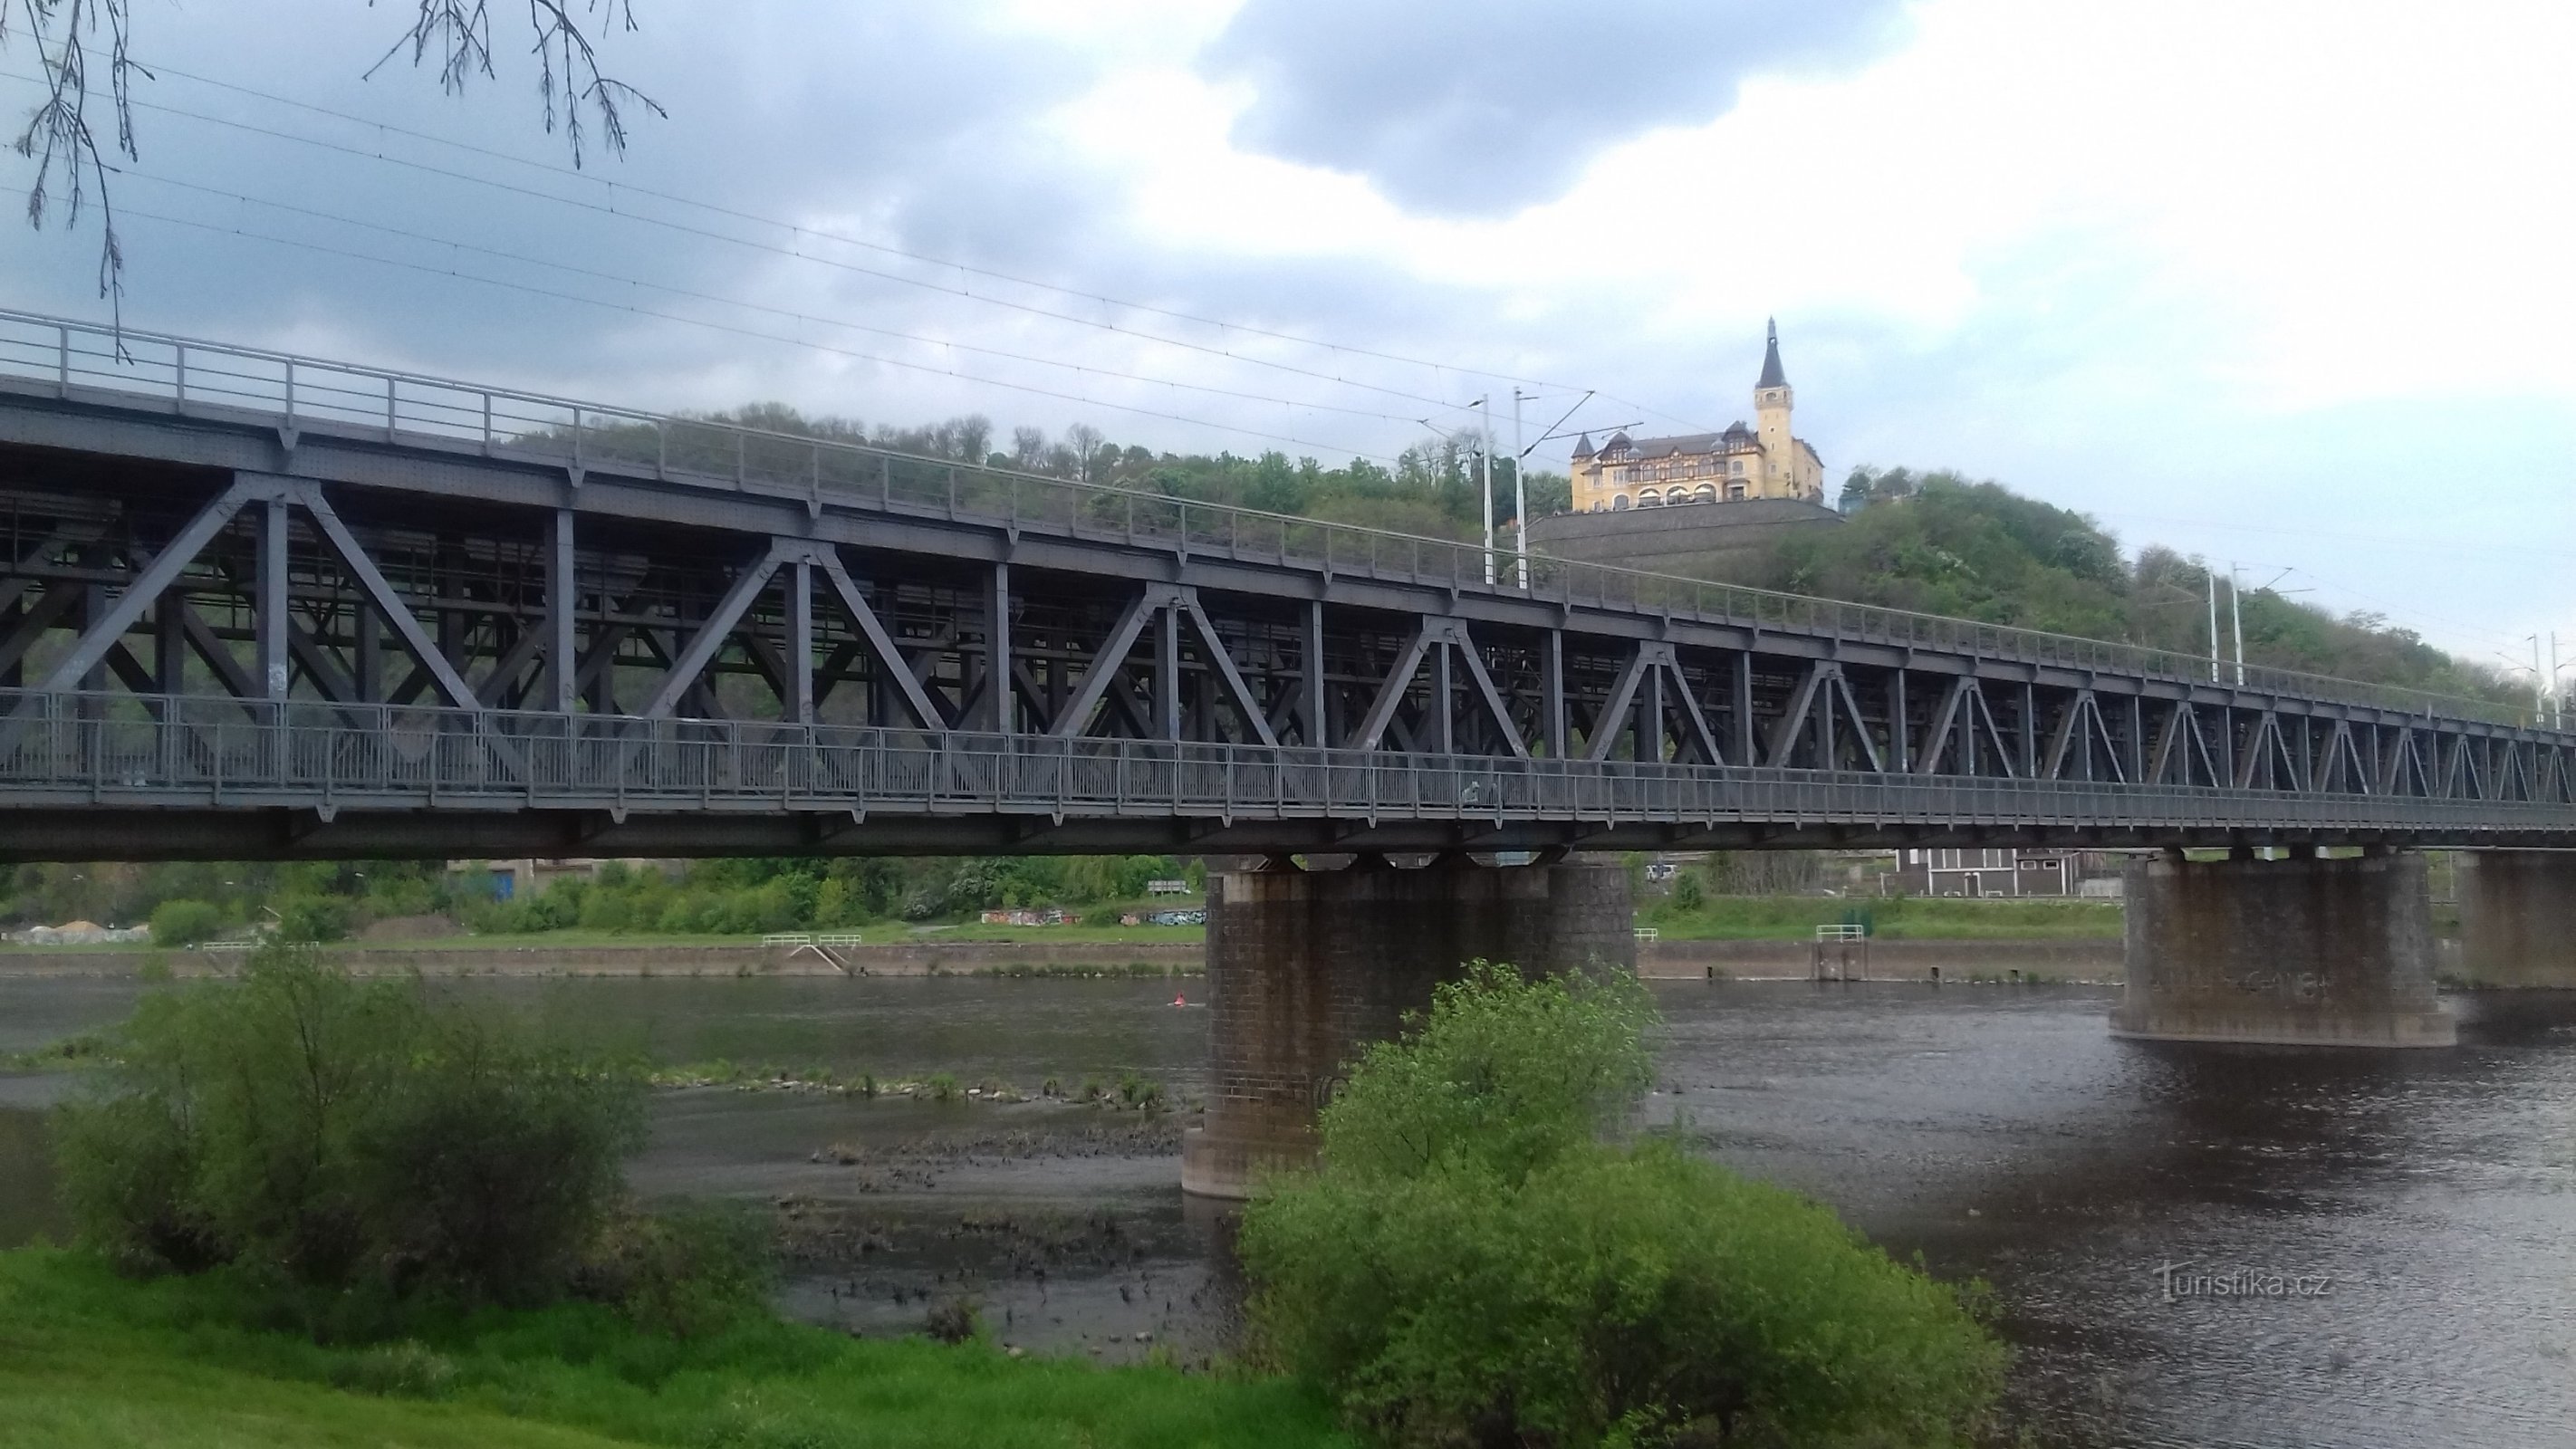 puente ferroviario